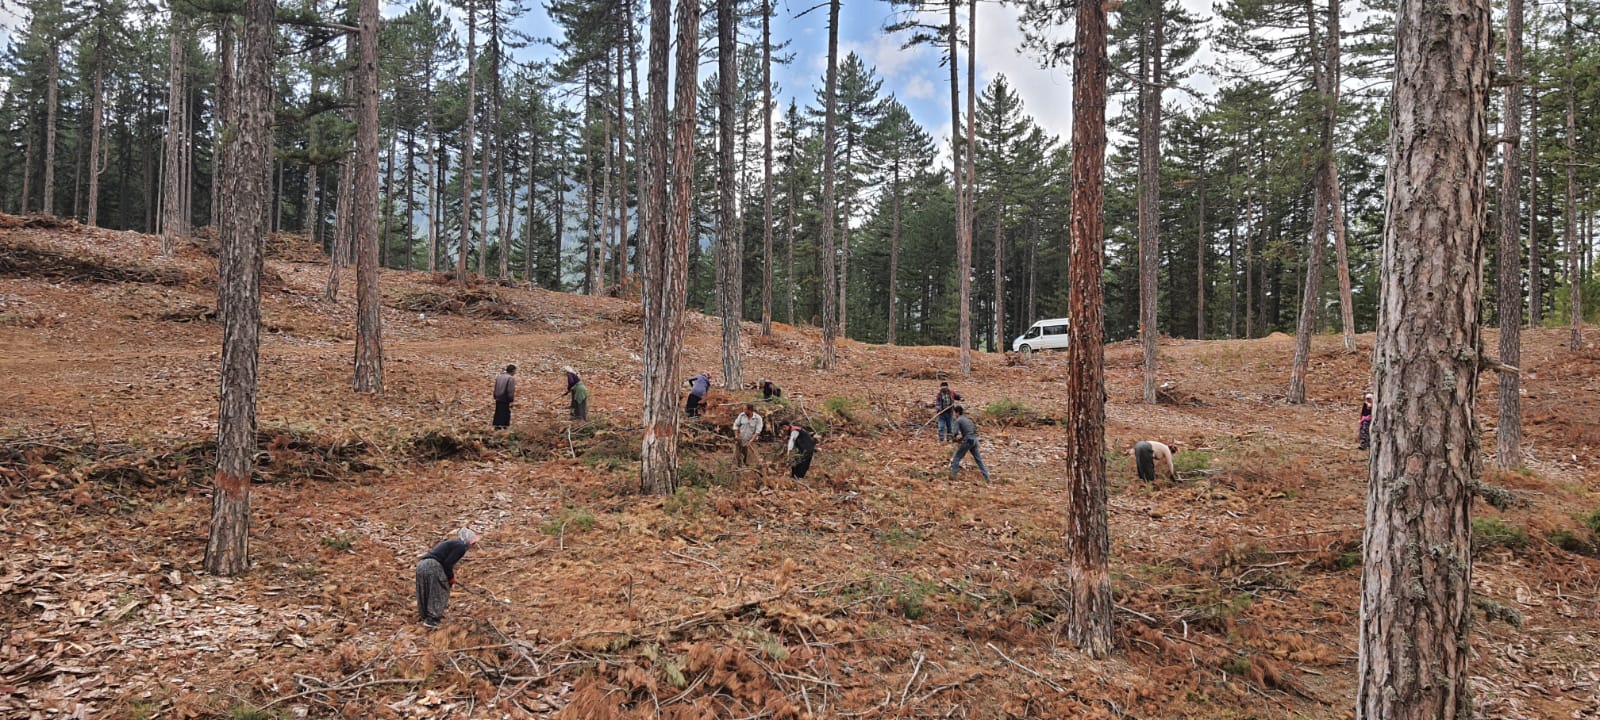 Adana'da orman gençleştirme çalışması yapıldı